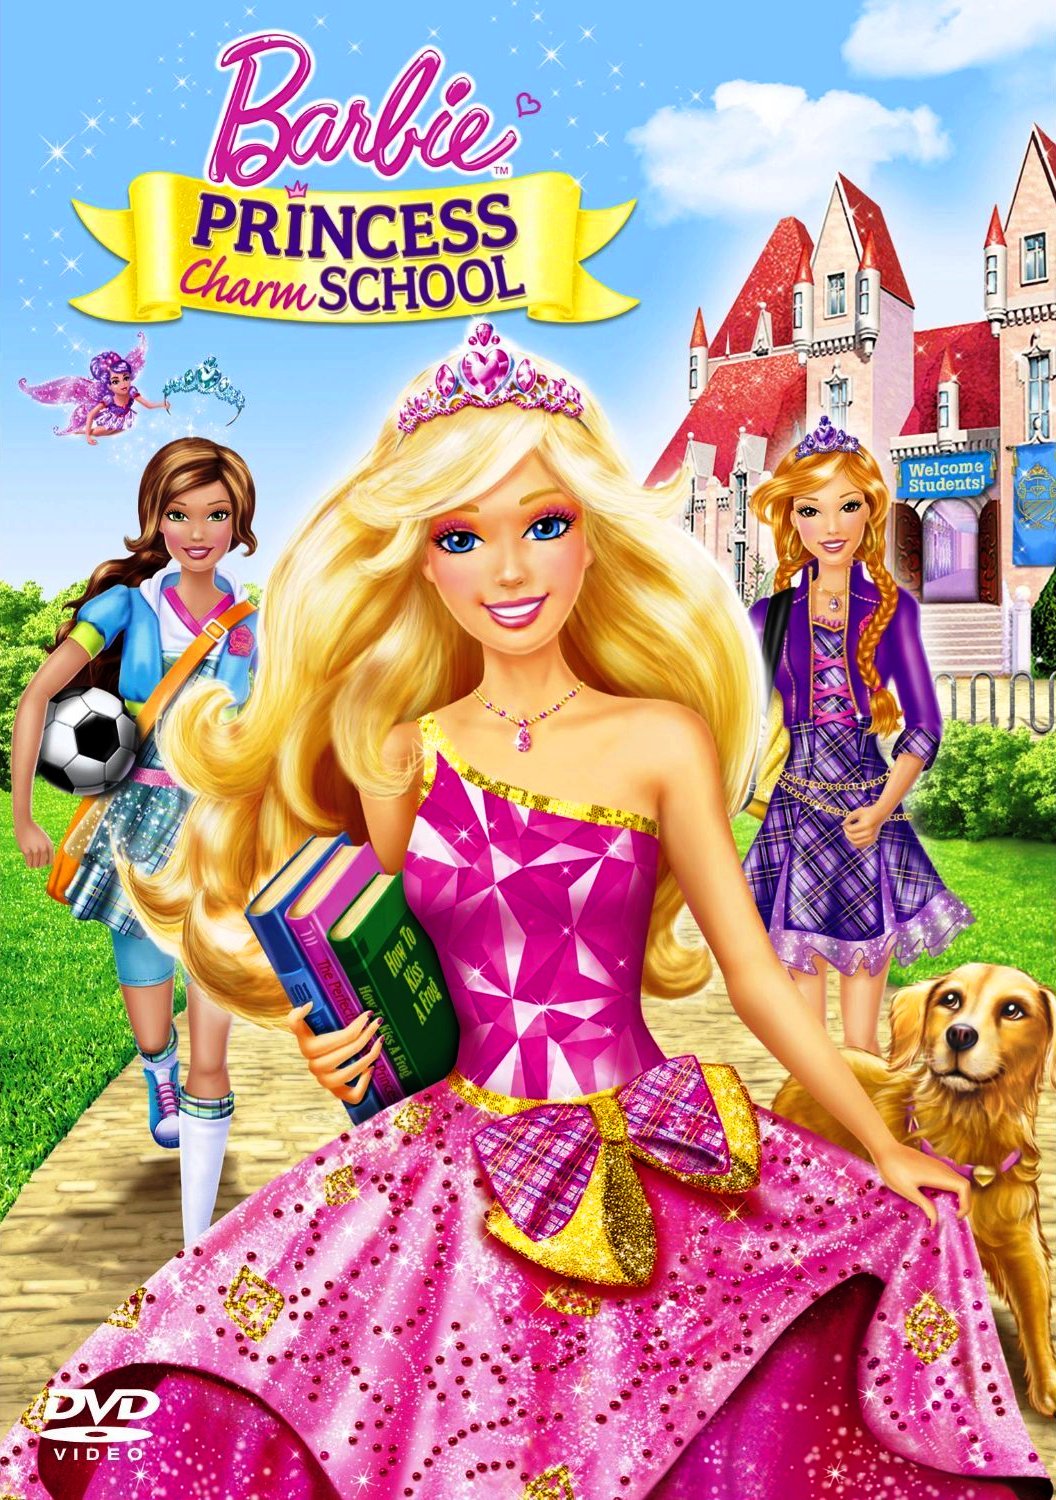 فيلم الأنيميشن العائلى الرائع Barbie Princess Charm School 2011 مدبلج للعربية